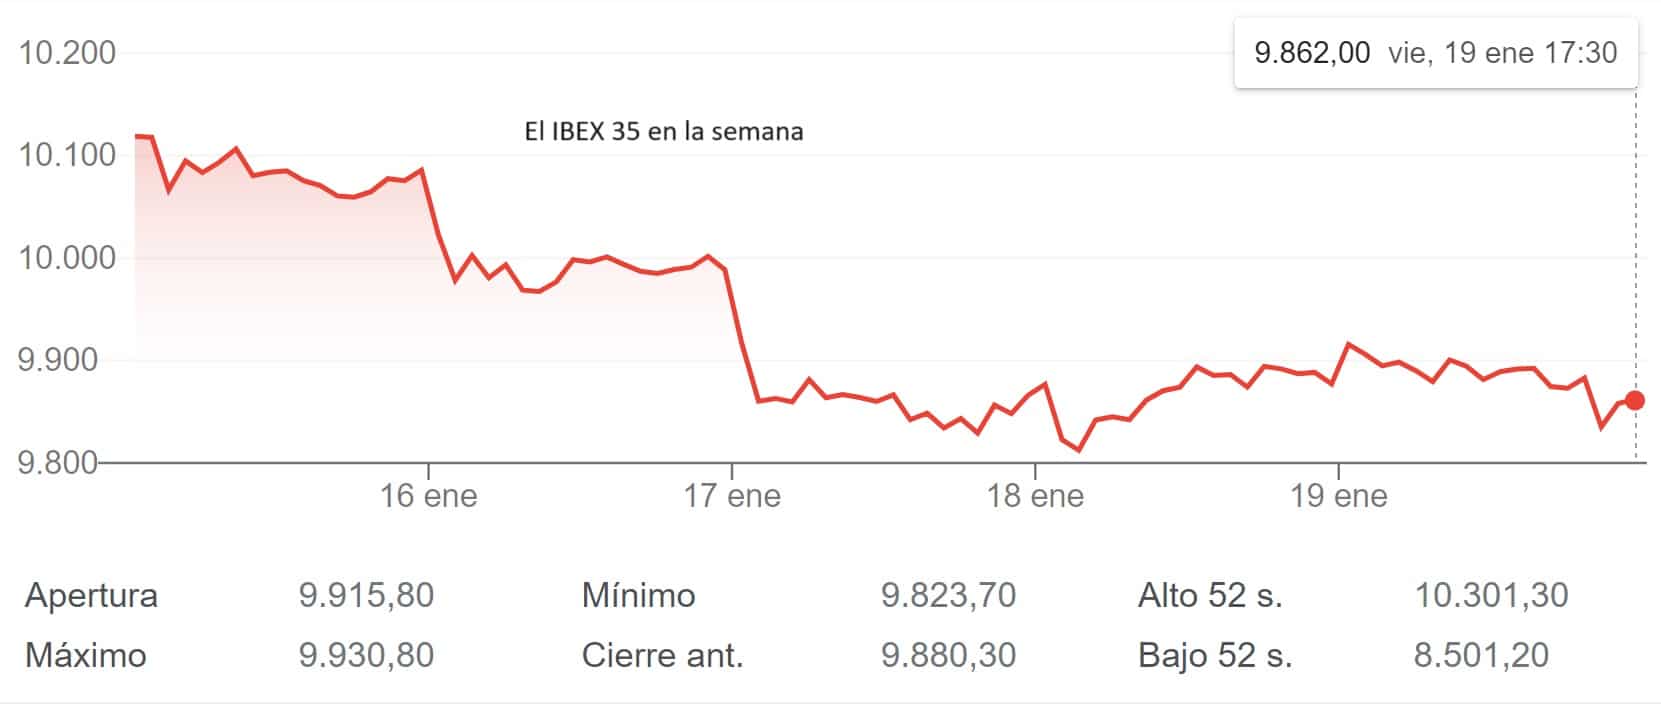 El IBEX 35 cae en viernes y cierra la semana con una pérdida superior al 2%